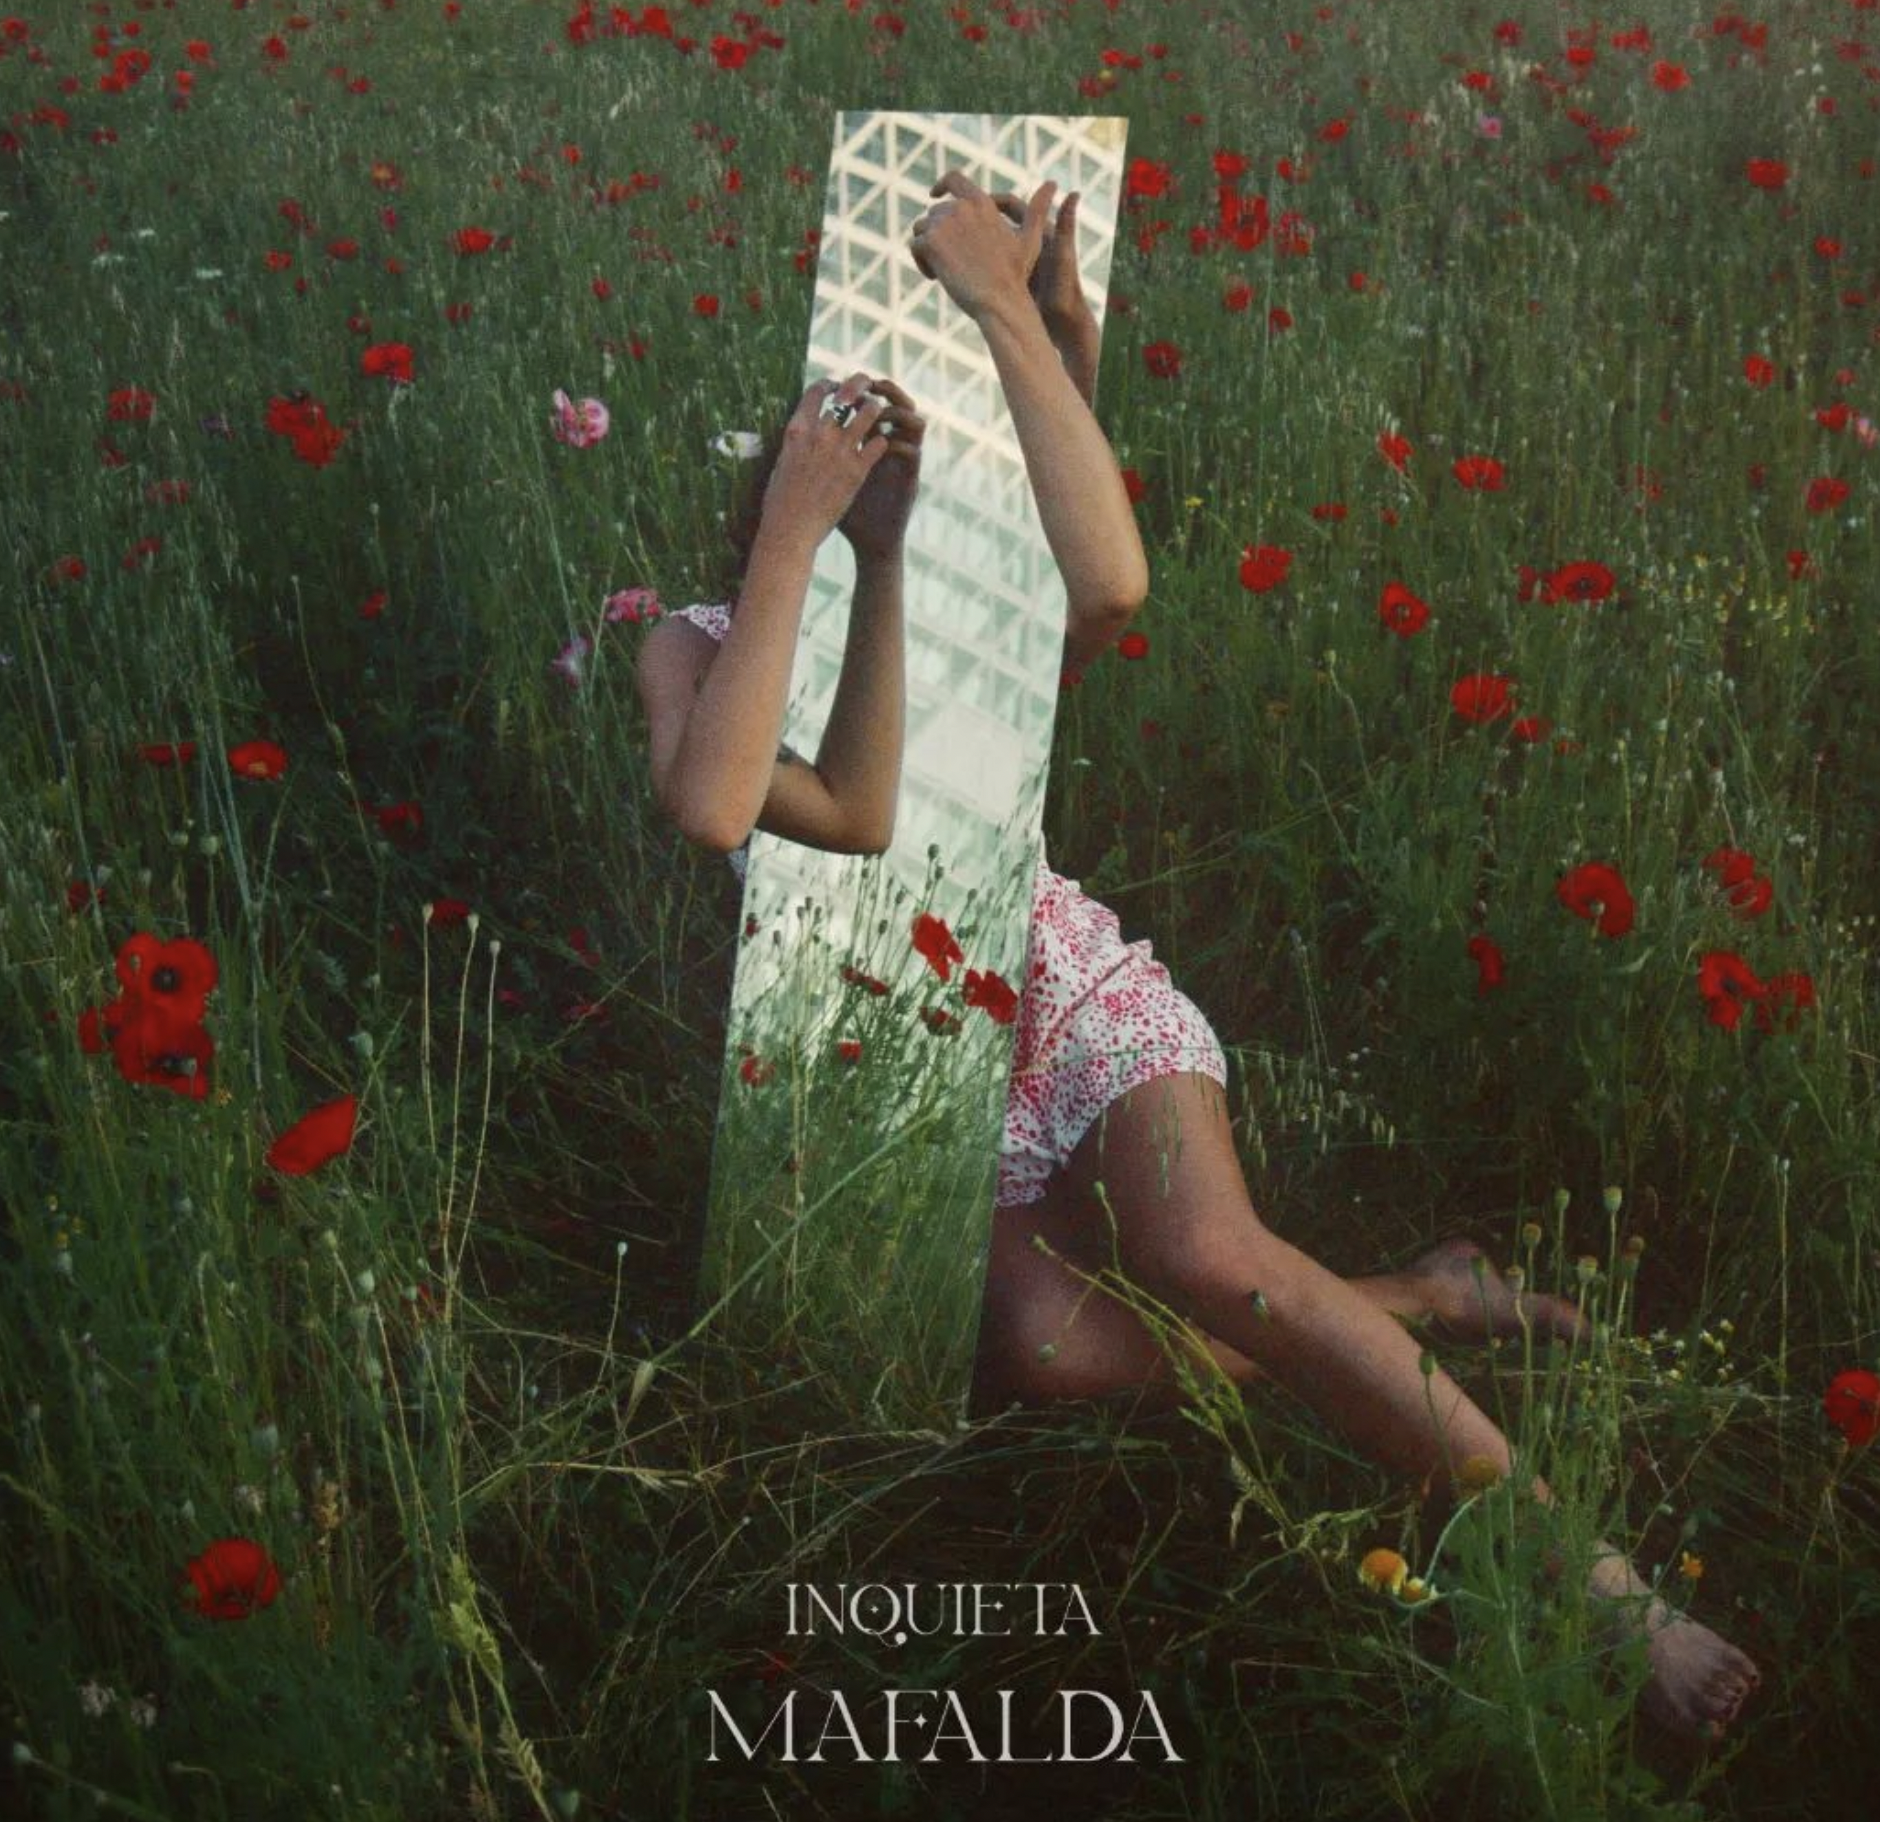 Al momento stai visualizzando MAFALDA: fuori ora il singolo “Inquieta” – la recensione